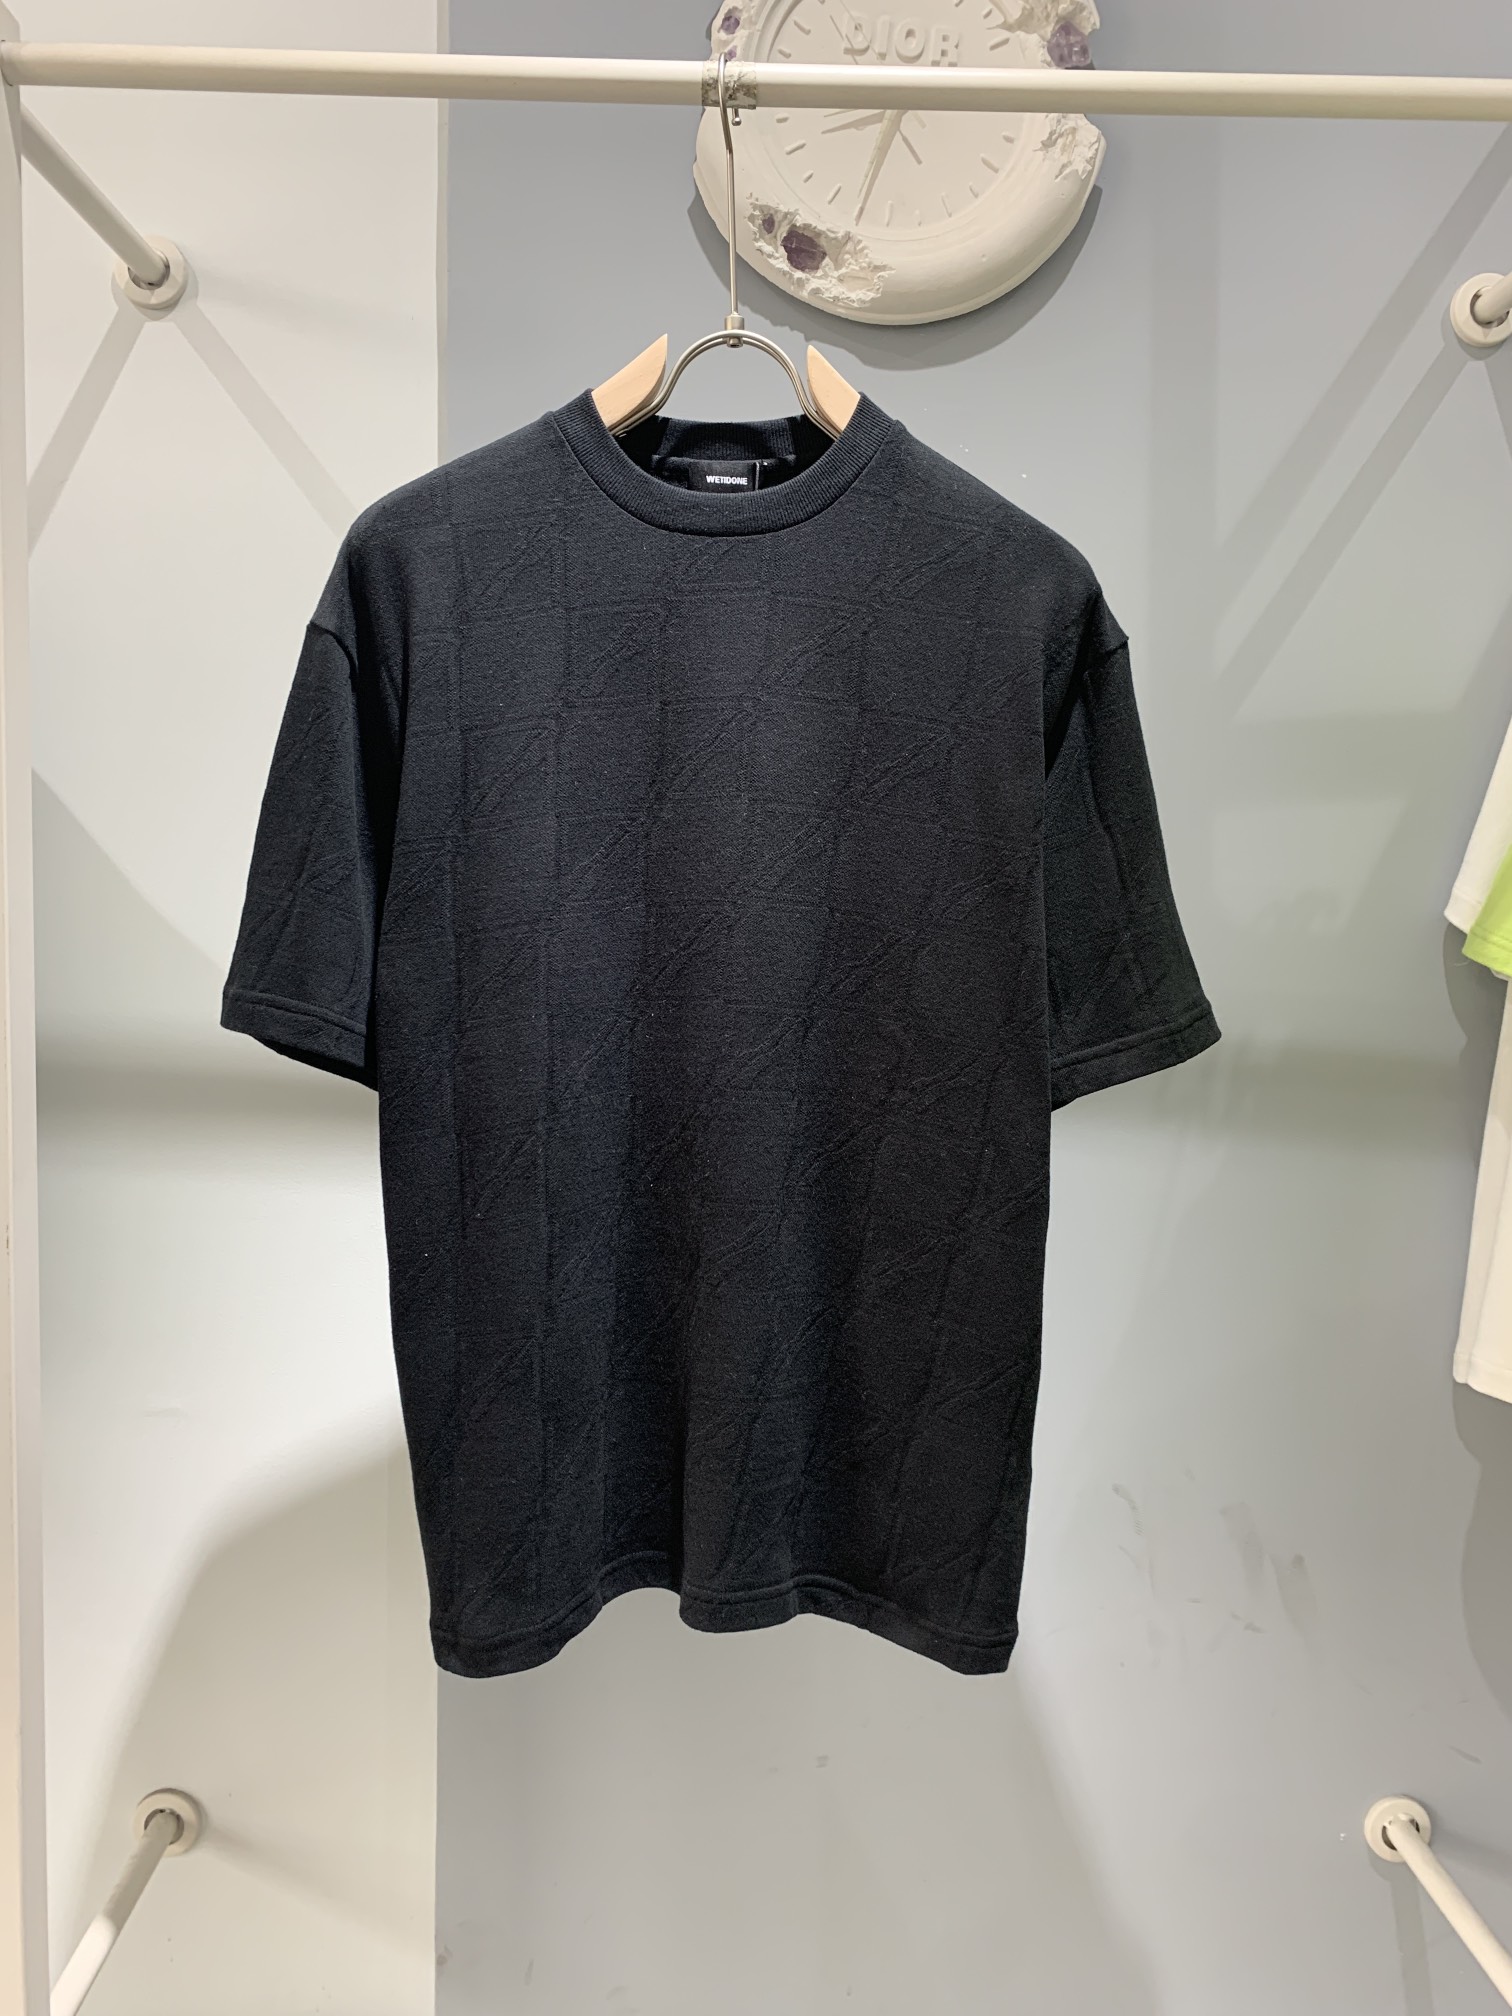 WE11DONE tシャツヘビーウェイト激安通販 最安値人気 純綿トップス 人気新作 短袖Tシャツ 2色可選 ブラック_1